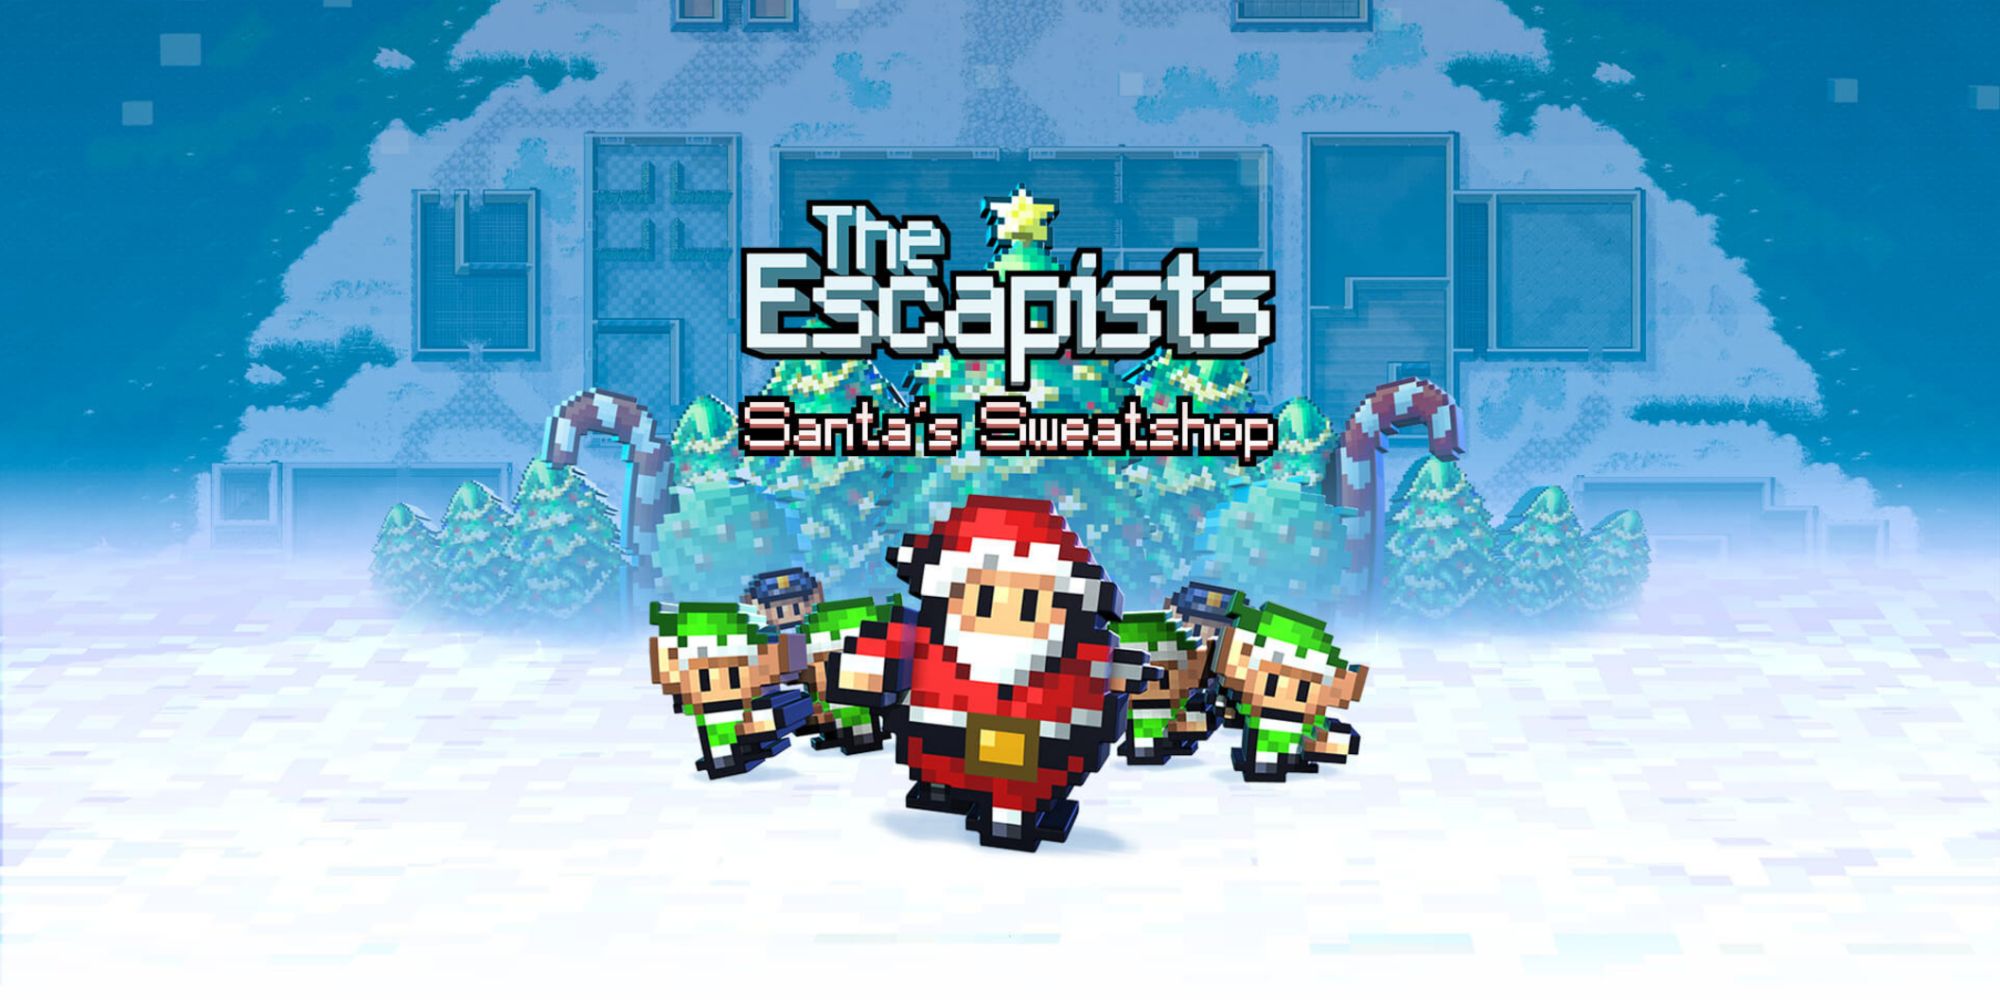 Promotional art for the Santa's Sweatshop Escapists 2 DLC.